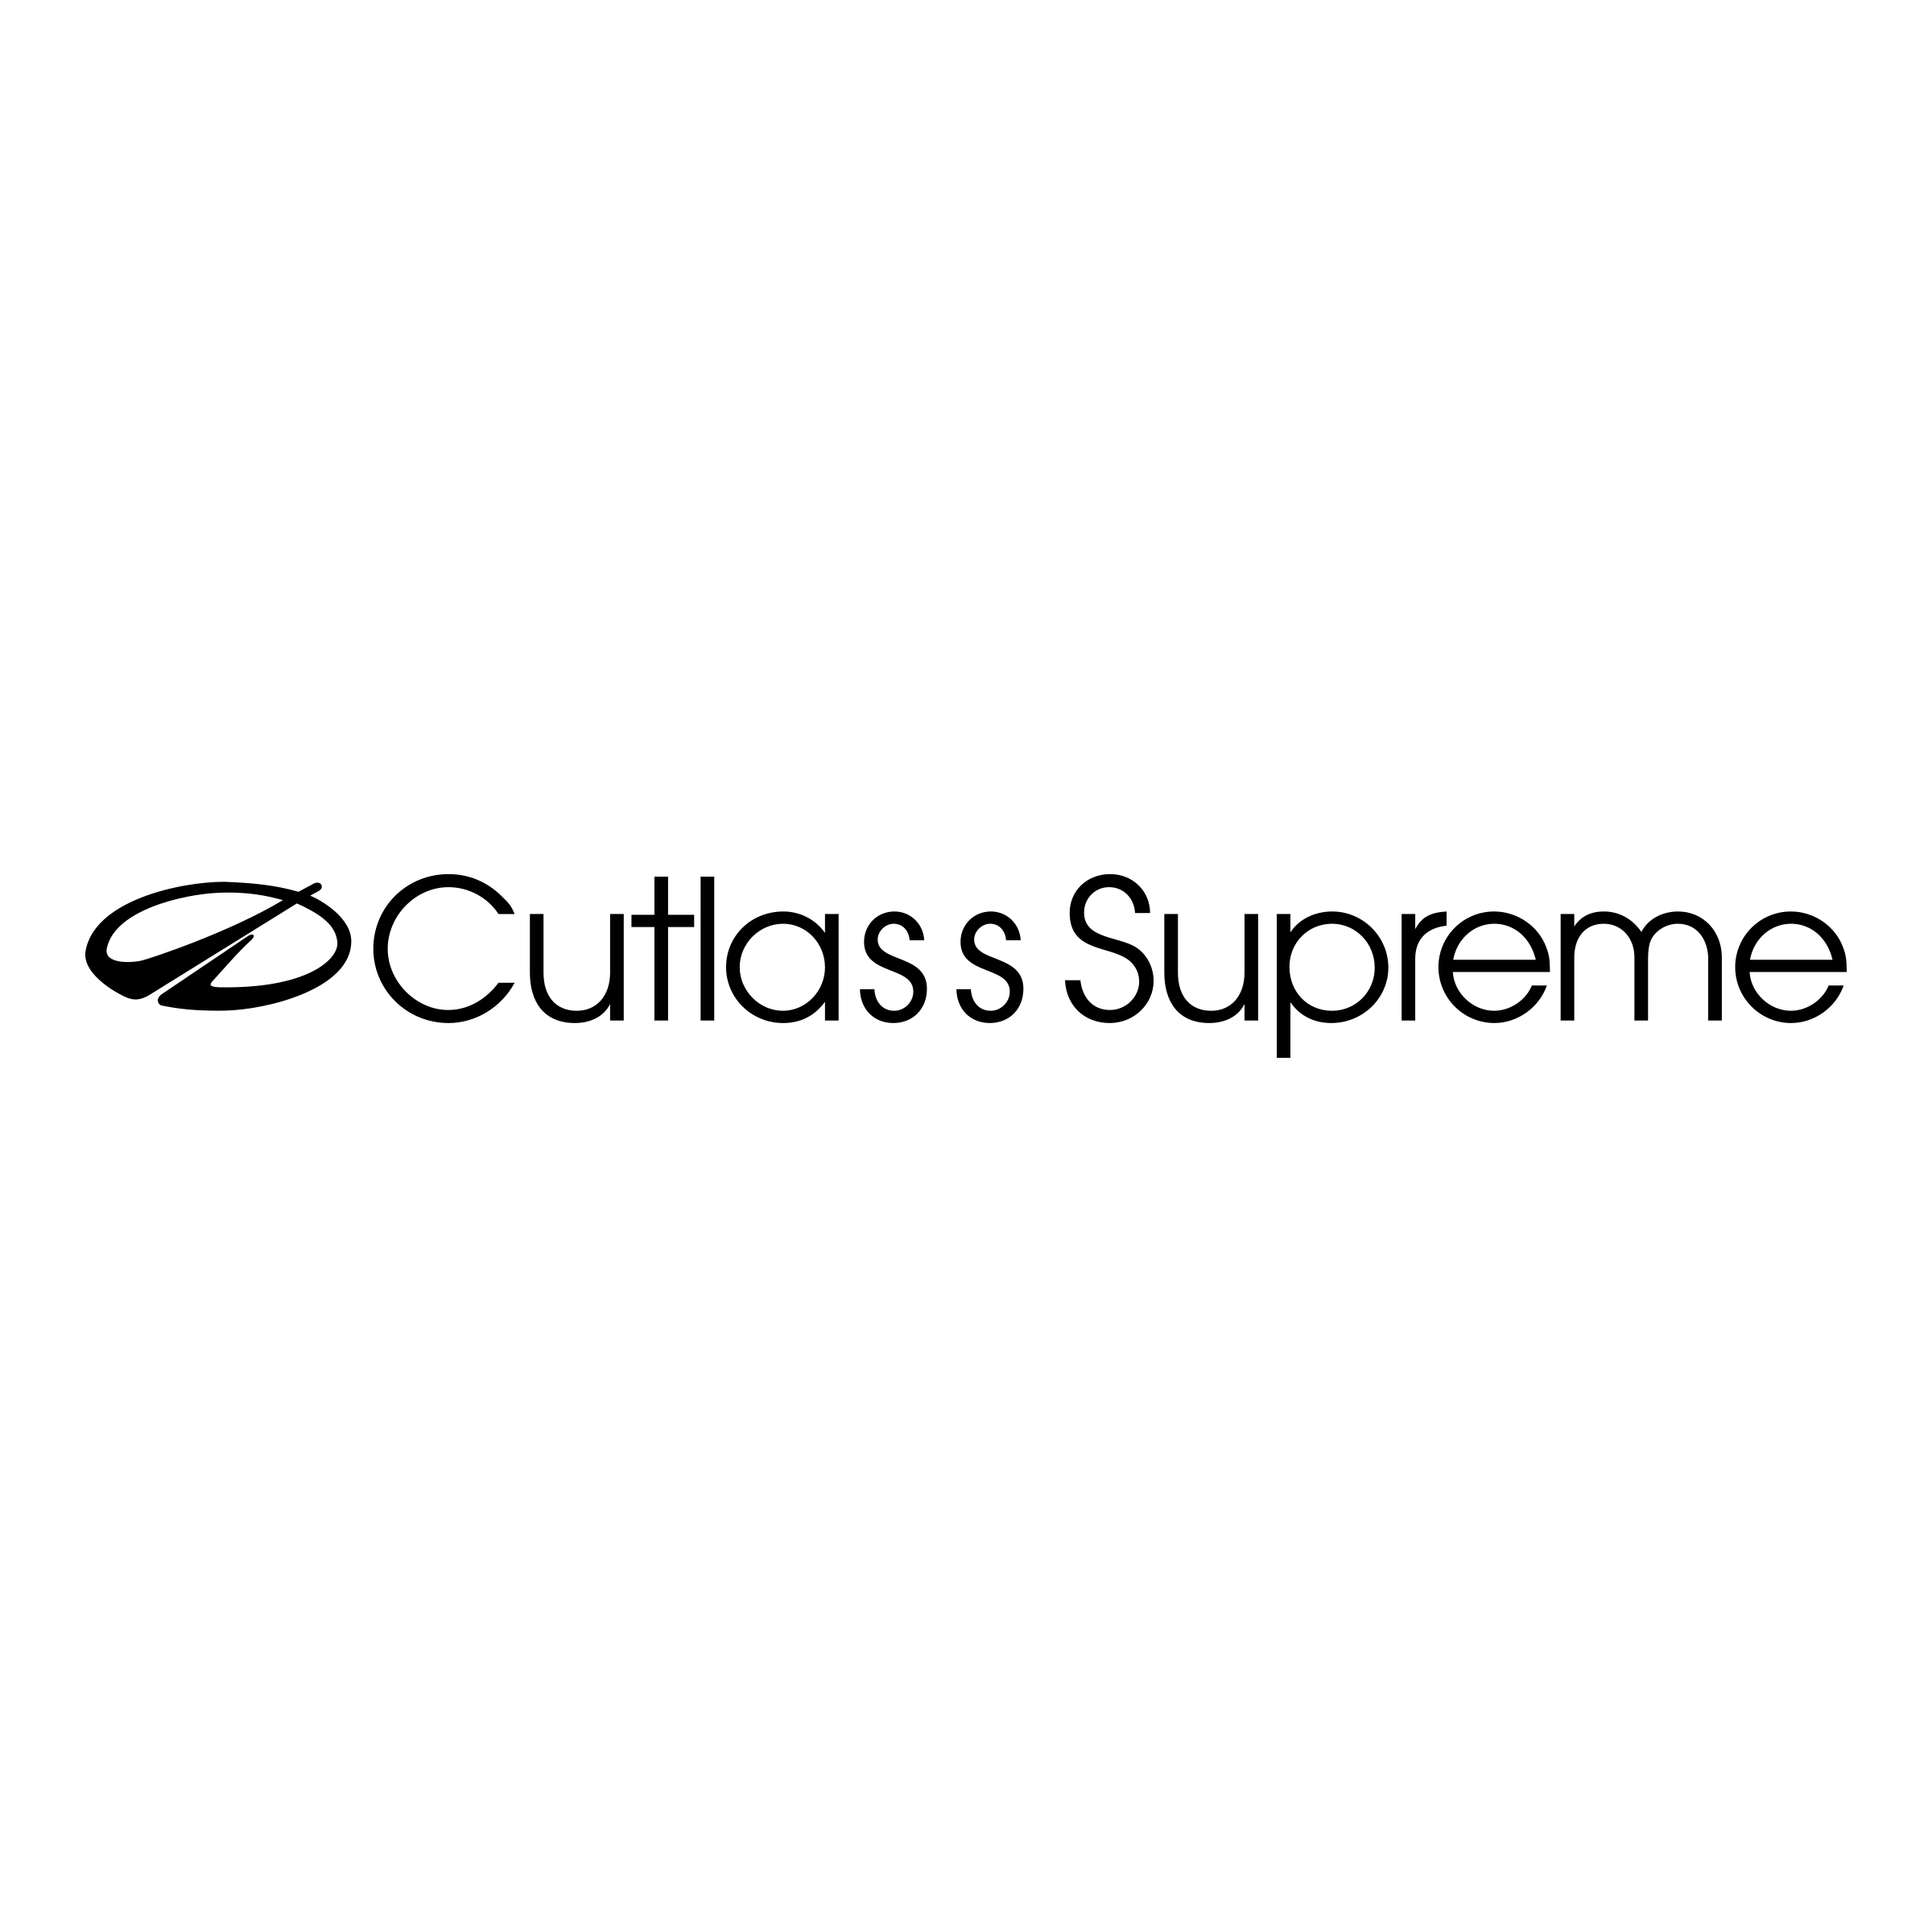 Transperant Black Supreme Logo - Cutlass Supreme Logo PNG Transparent & SVG Vector - Freebie Supply